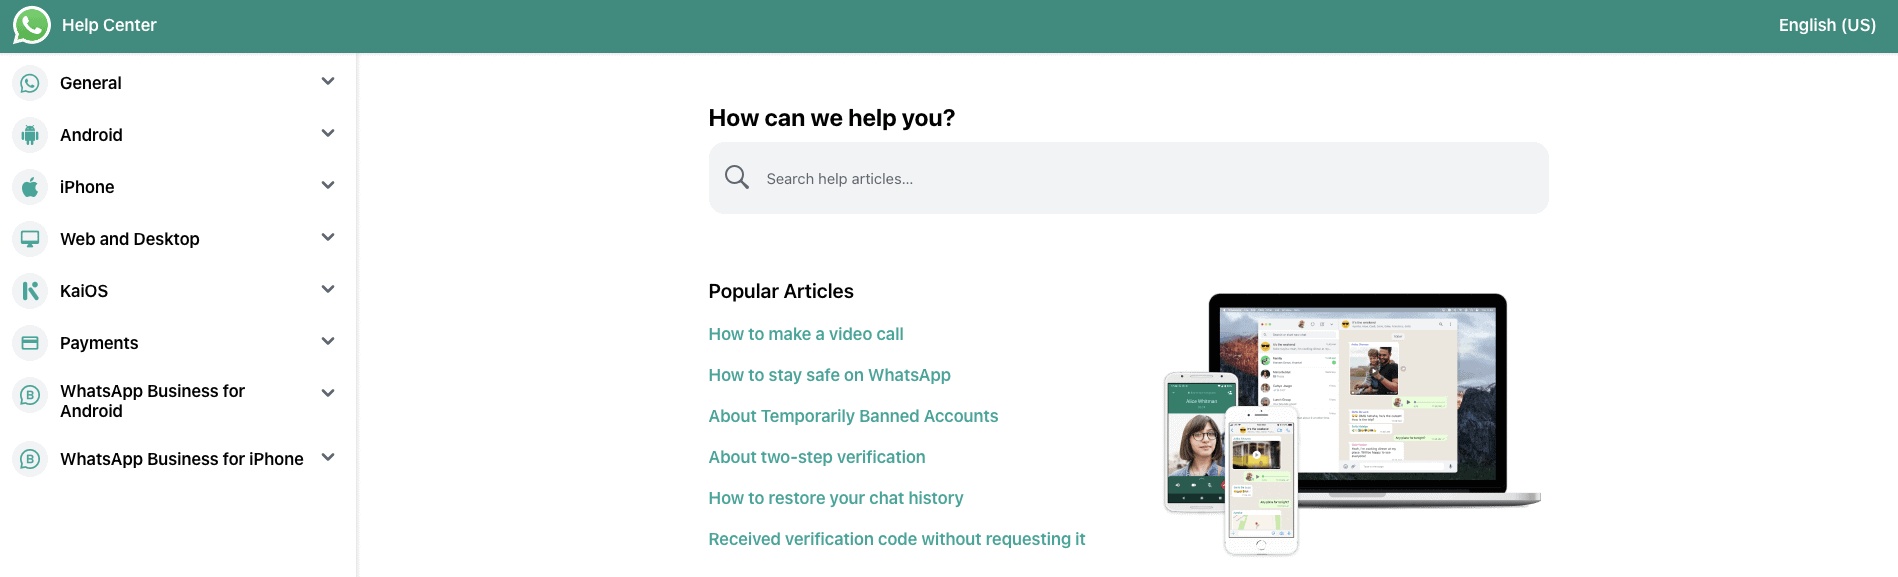 Página de preguntas frecuentes en Whats app